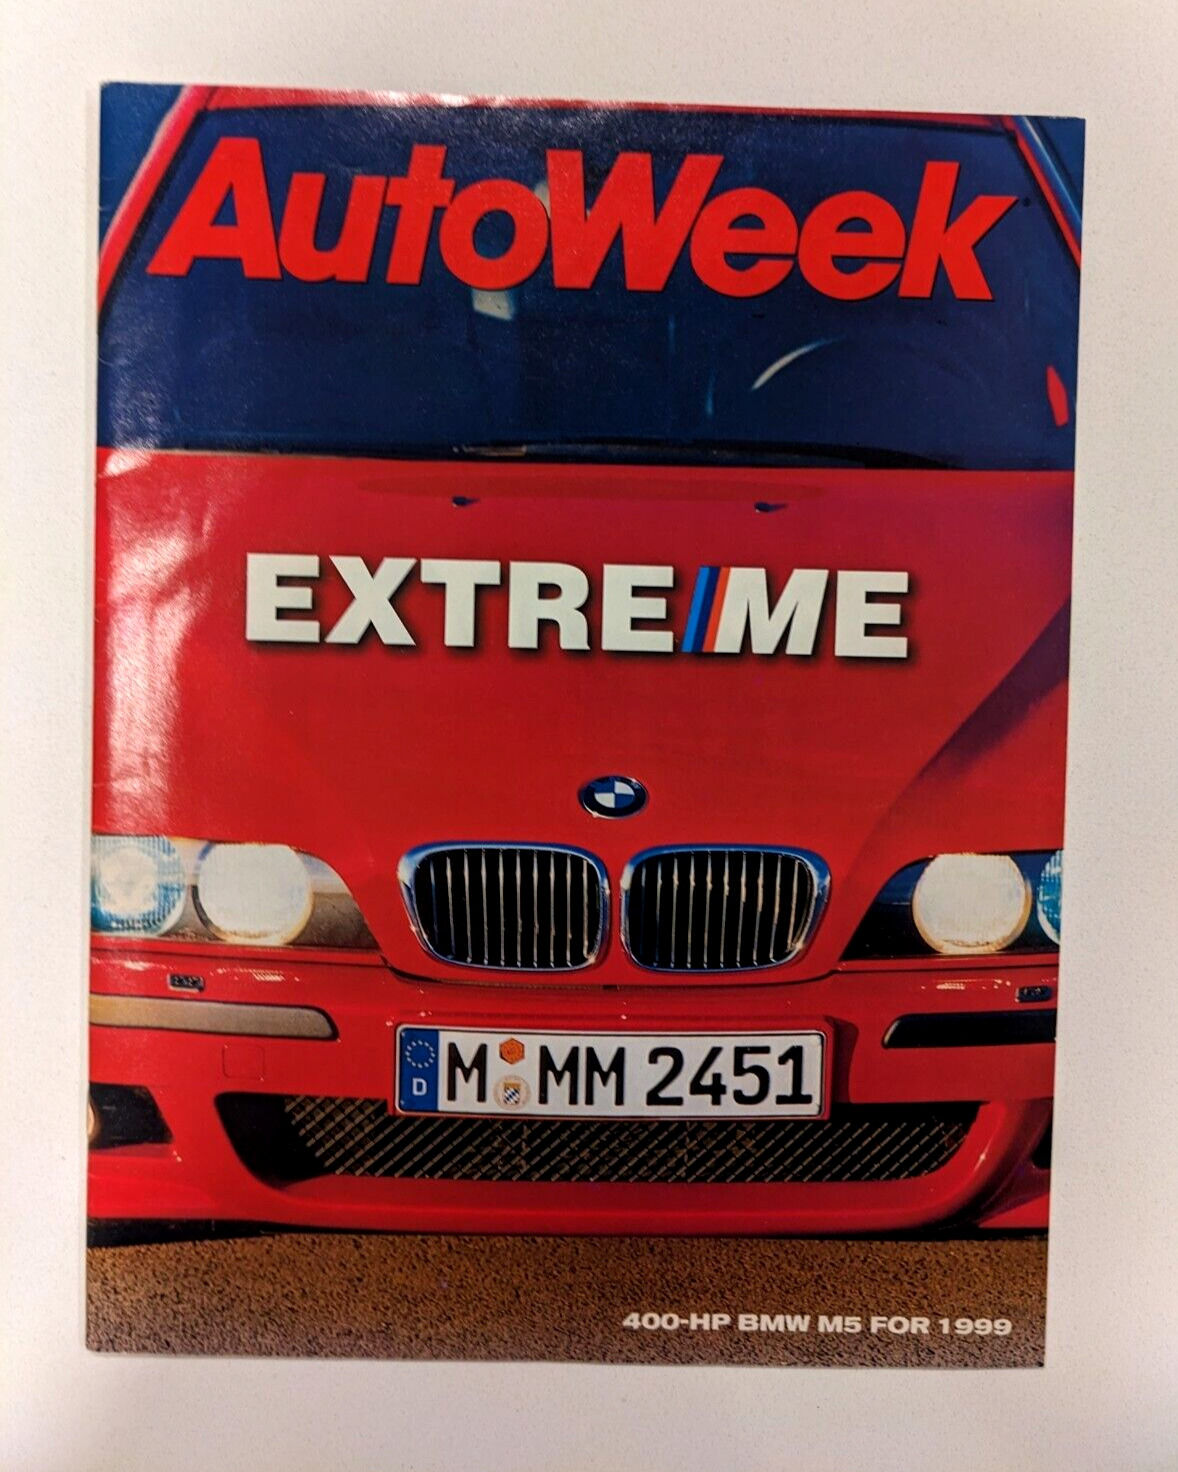 AutoWeek Magazine December 1998 - BMW E39 M5 Issue